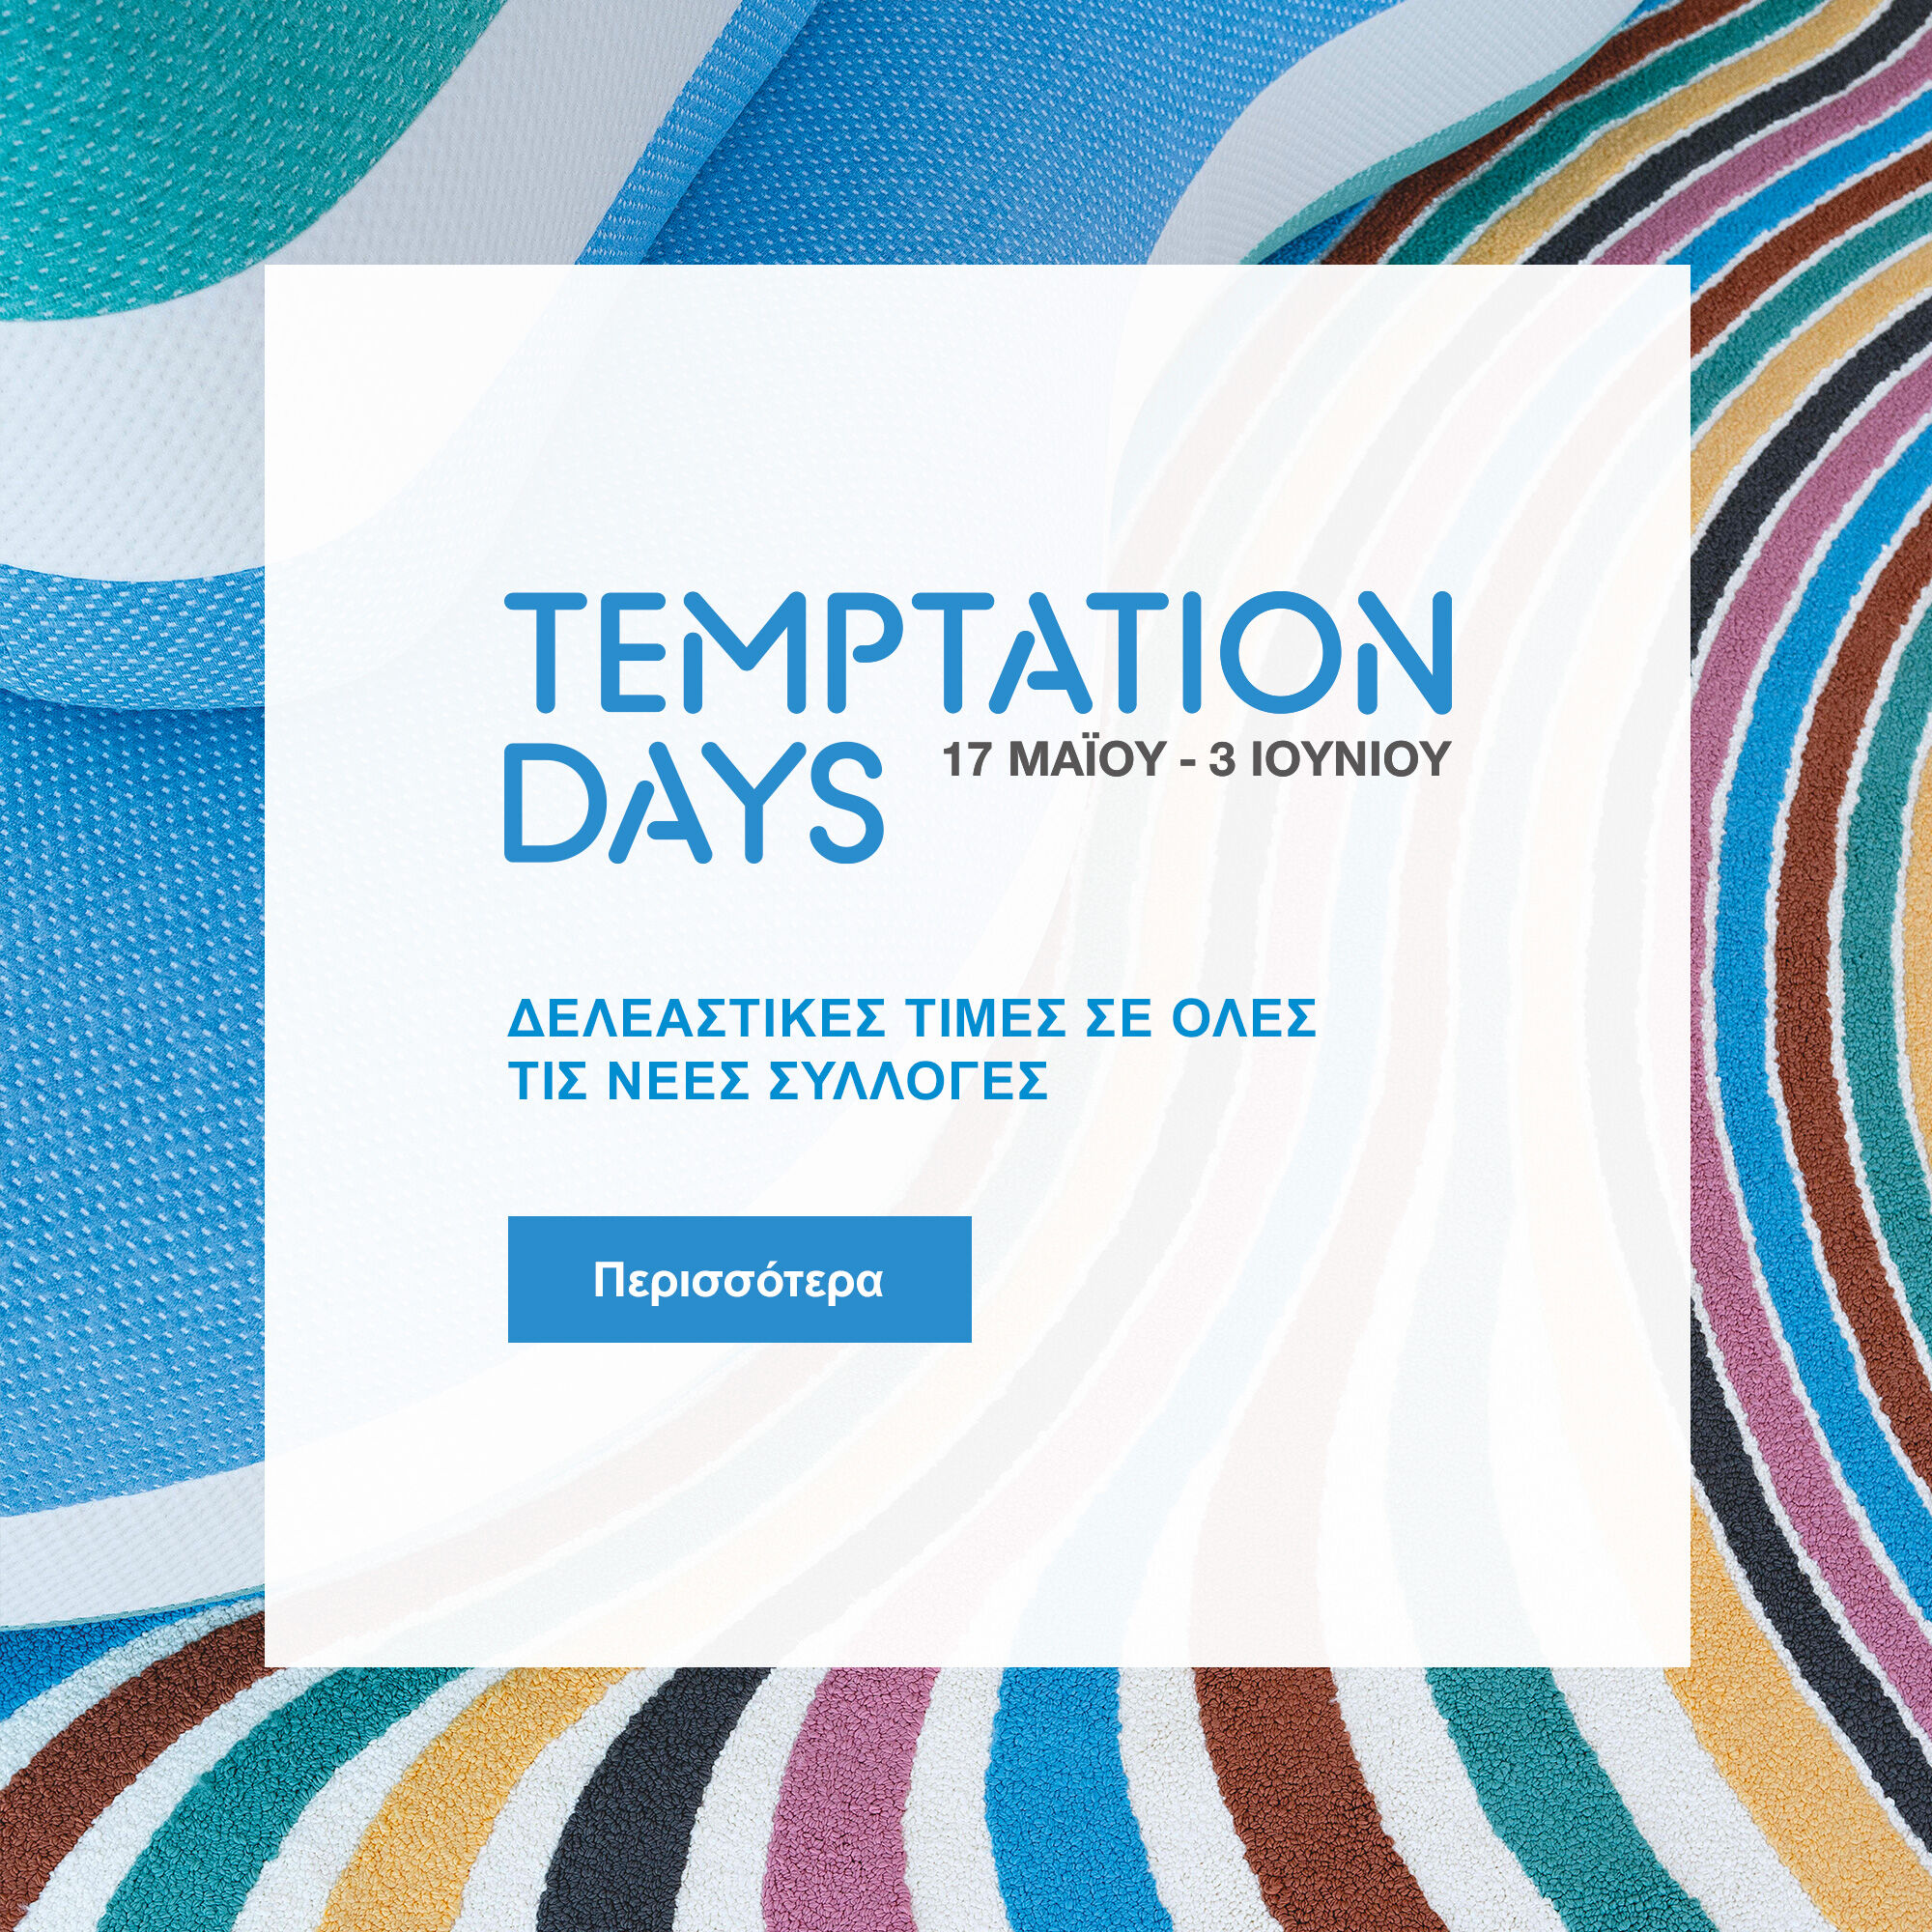 Οι Temptation Days διαρκούν μόνο έως τις 3 Ιουνίου.